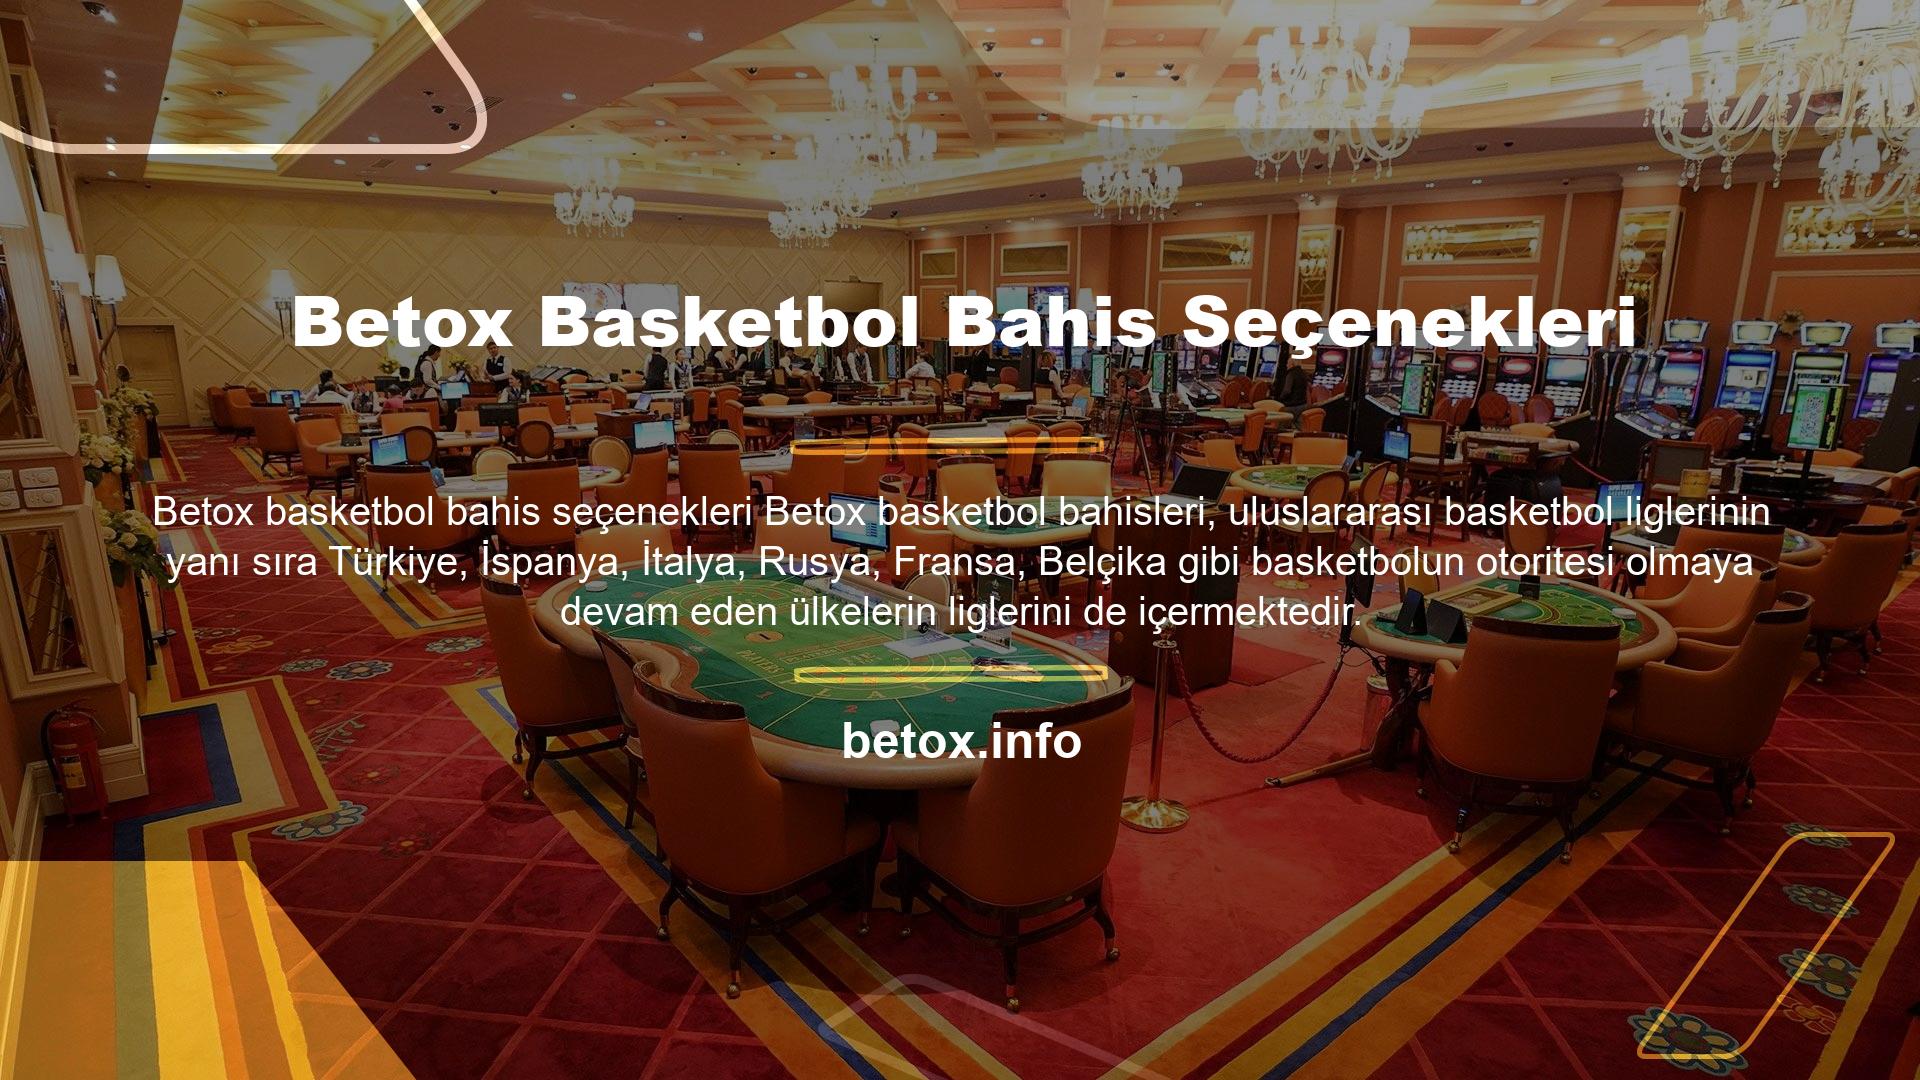 Üstelik söz konusu basketbol olduğunda Betox NBA için dünyada eşi benzeri olmayan pek çok özel menü hazırlamıştır